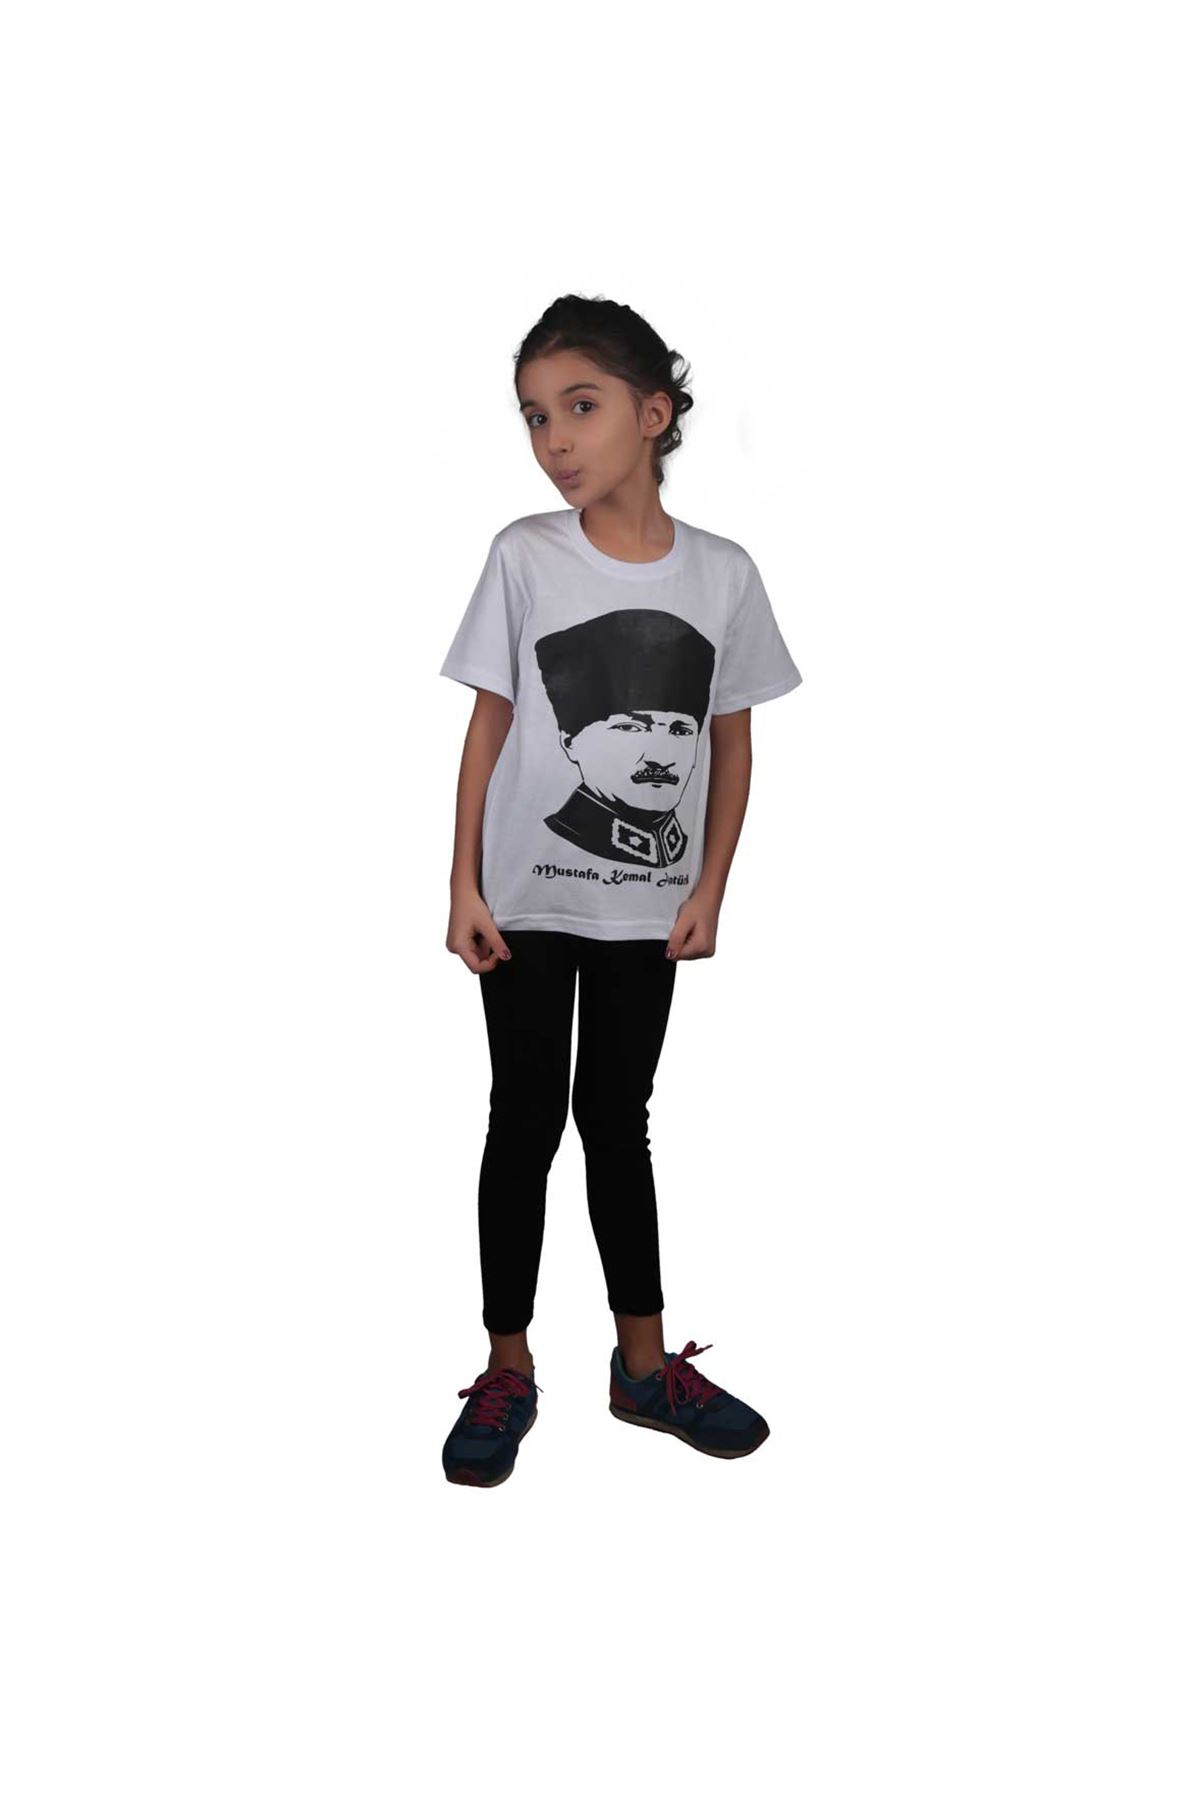 Beyaz Atatürk Baskılı Çocuk Pamuklu Tişört